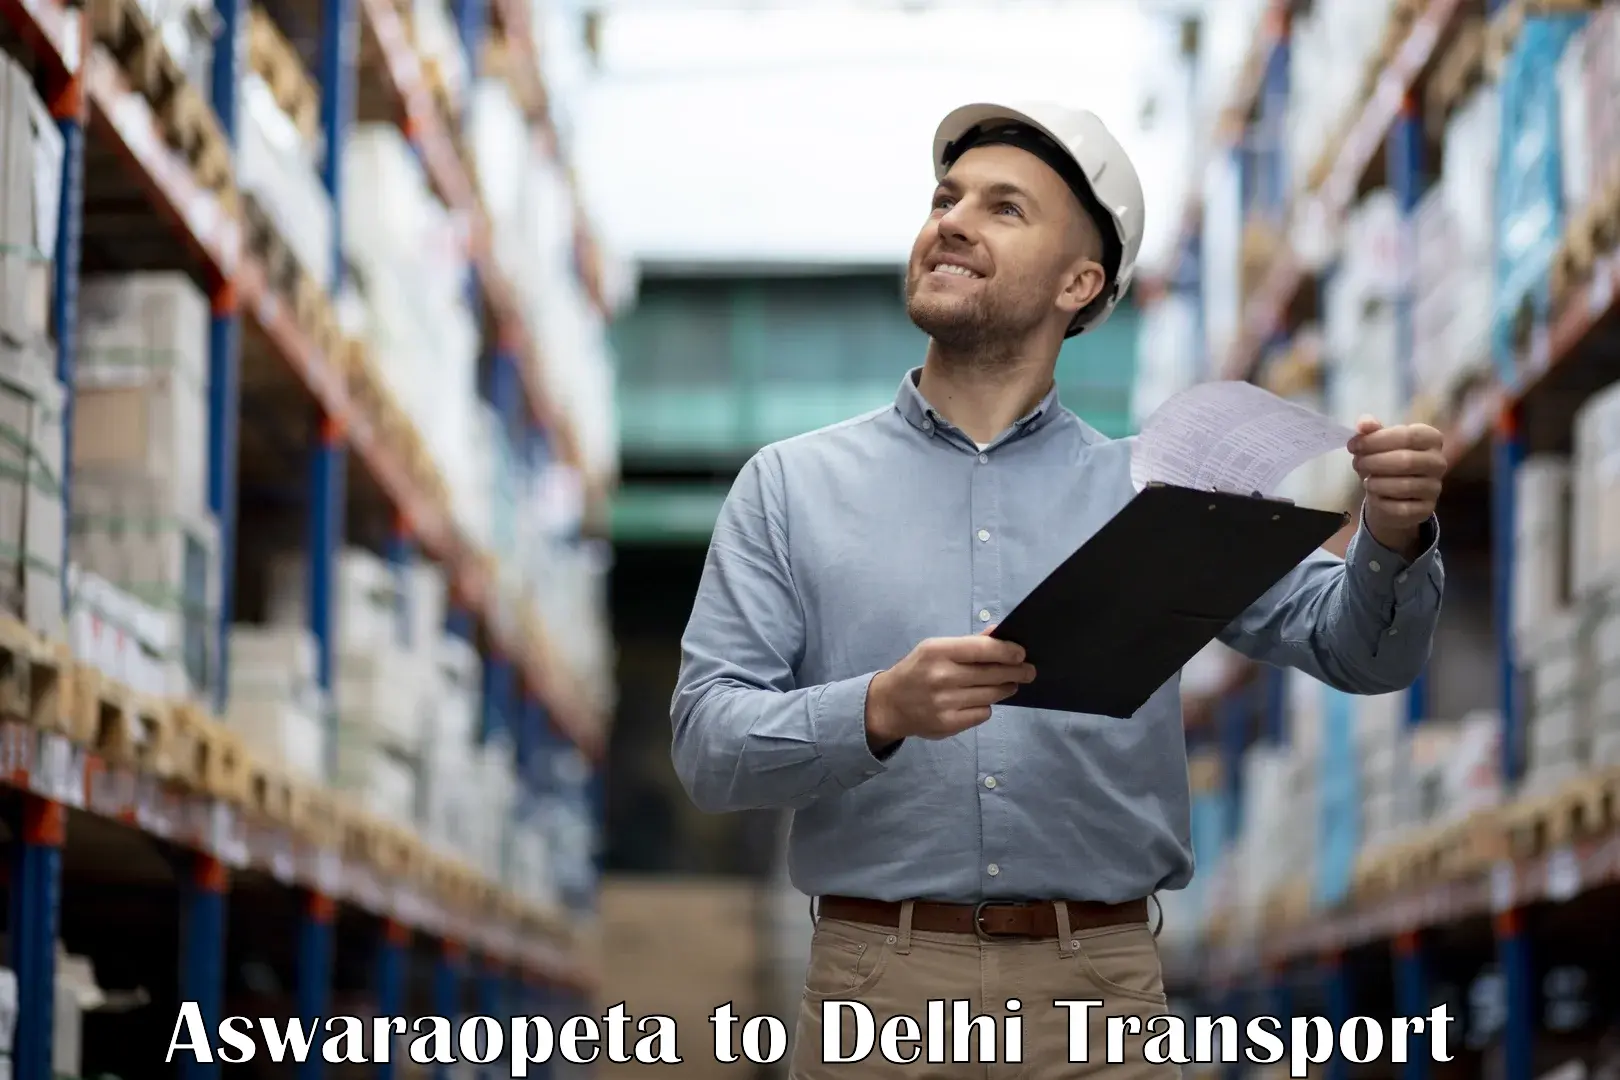 Online transport service Aswaraopeta to IIT Delhi